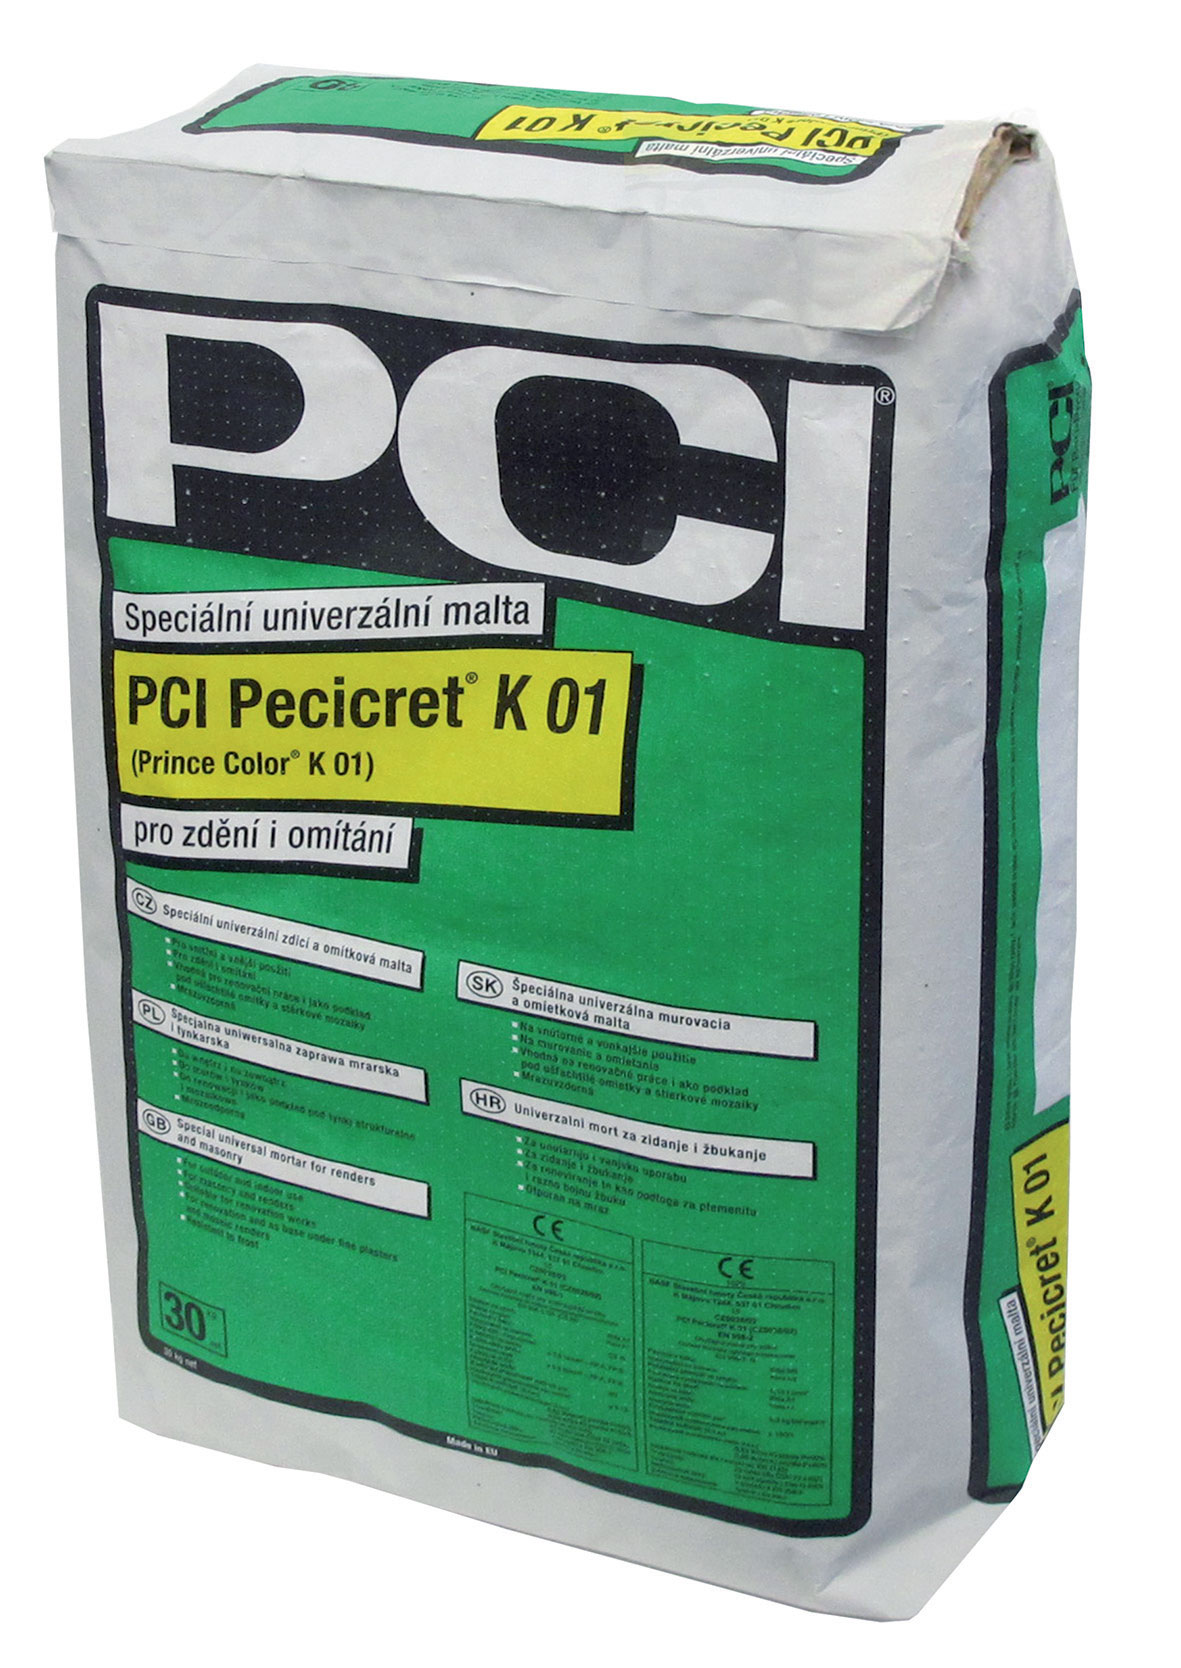 PCI Pecicret K 01